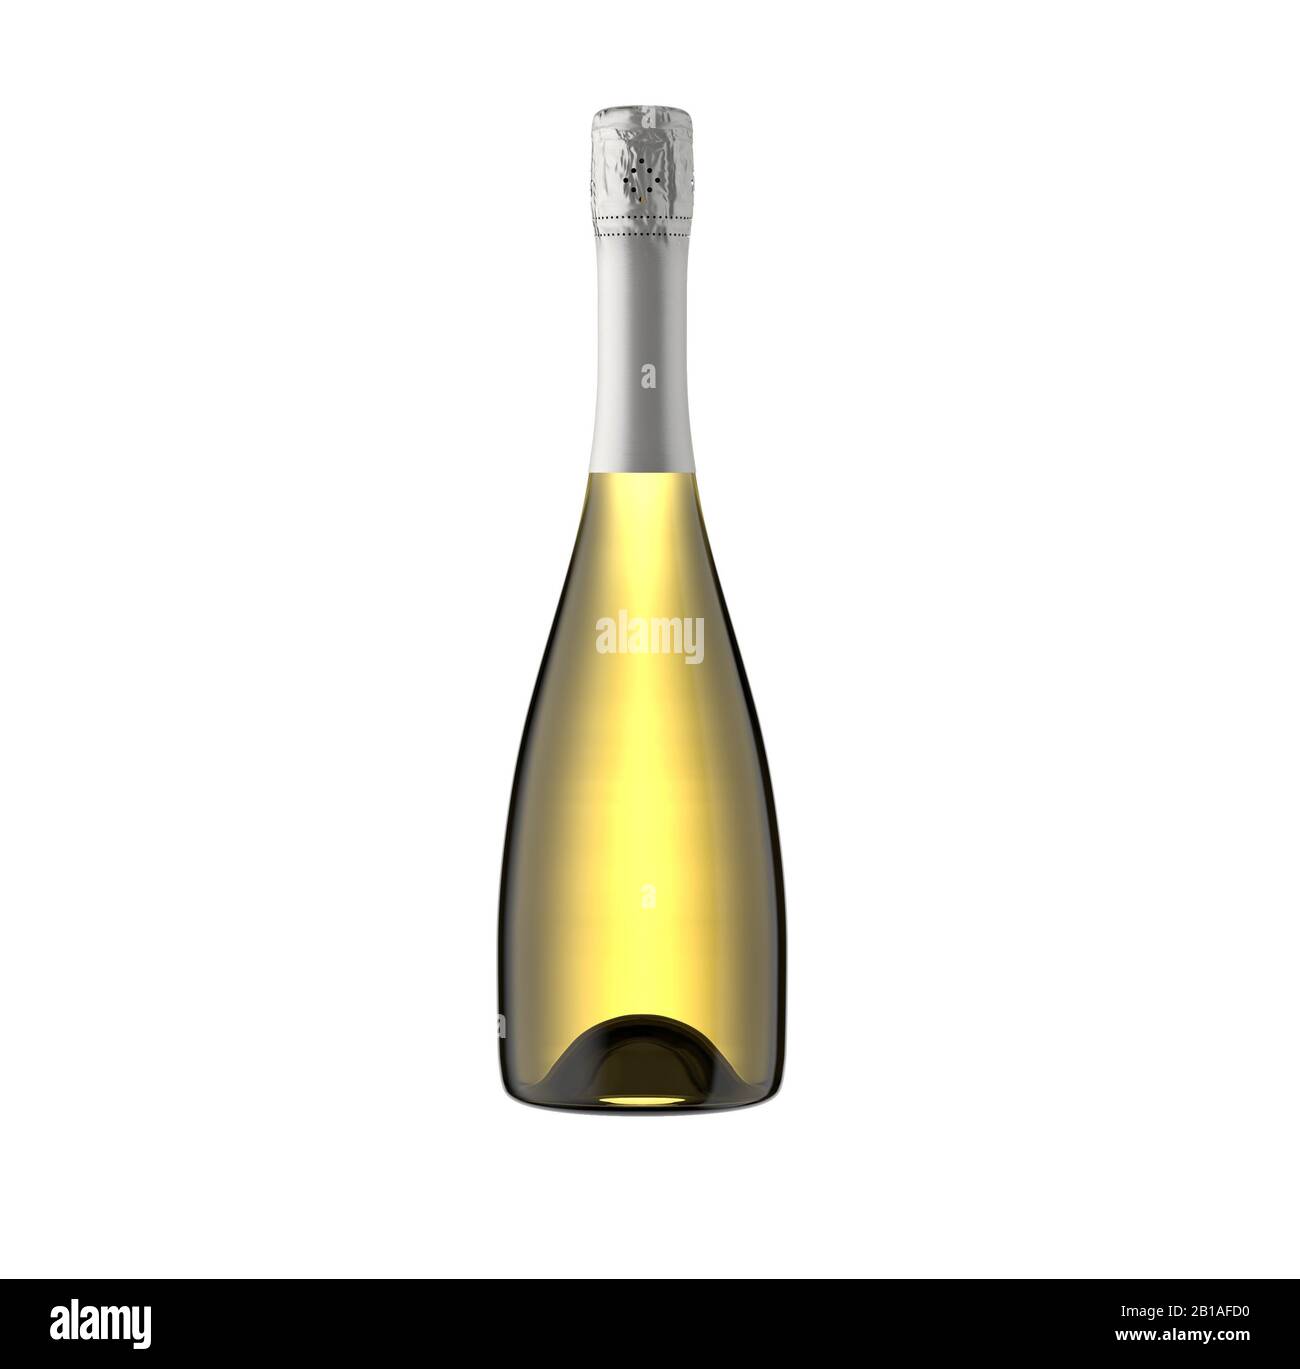 Sparkling white wine bottle, champagne bottle isolated on white background, for mockup, packshot, 3d rendering. Stock Photo